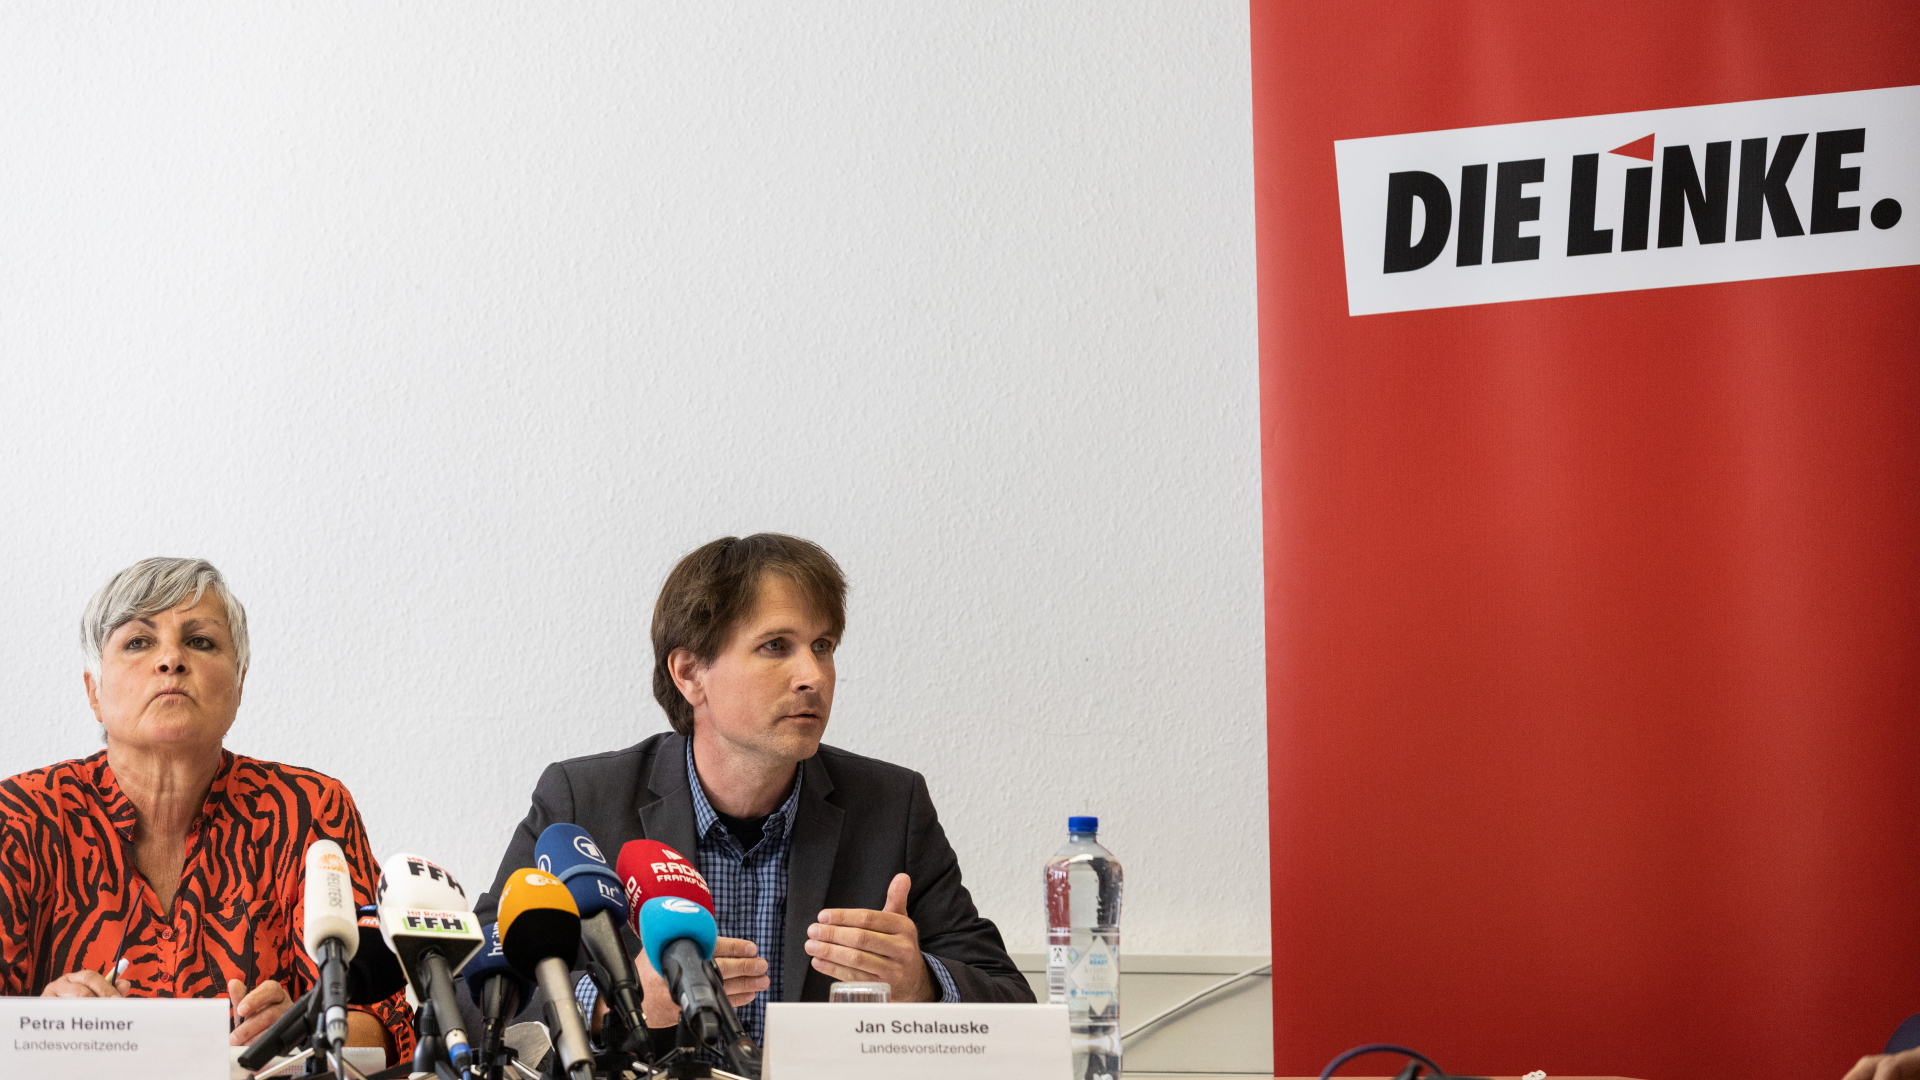 Petra Heimer und Jan Schalauske, hessische Landesvorsitzende der Partei Die Linke, geben eine Pressekonferenz. | dpa